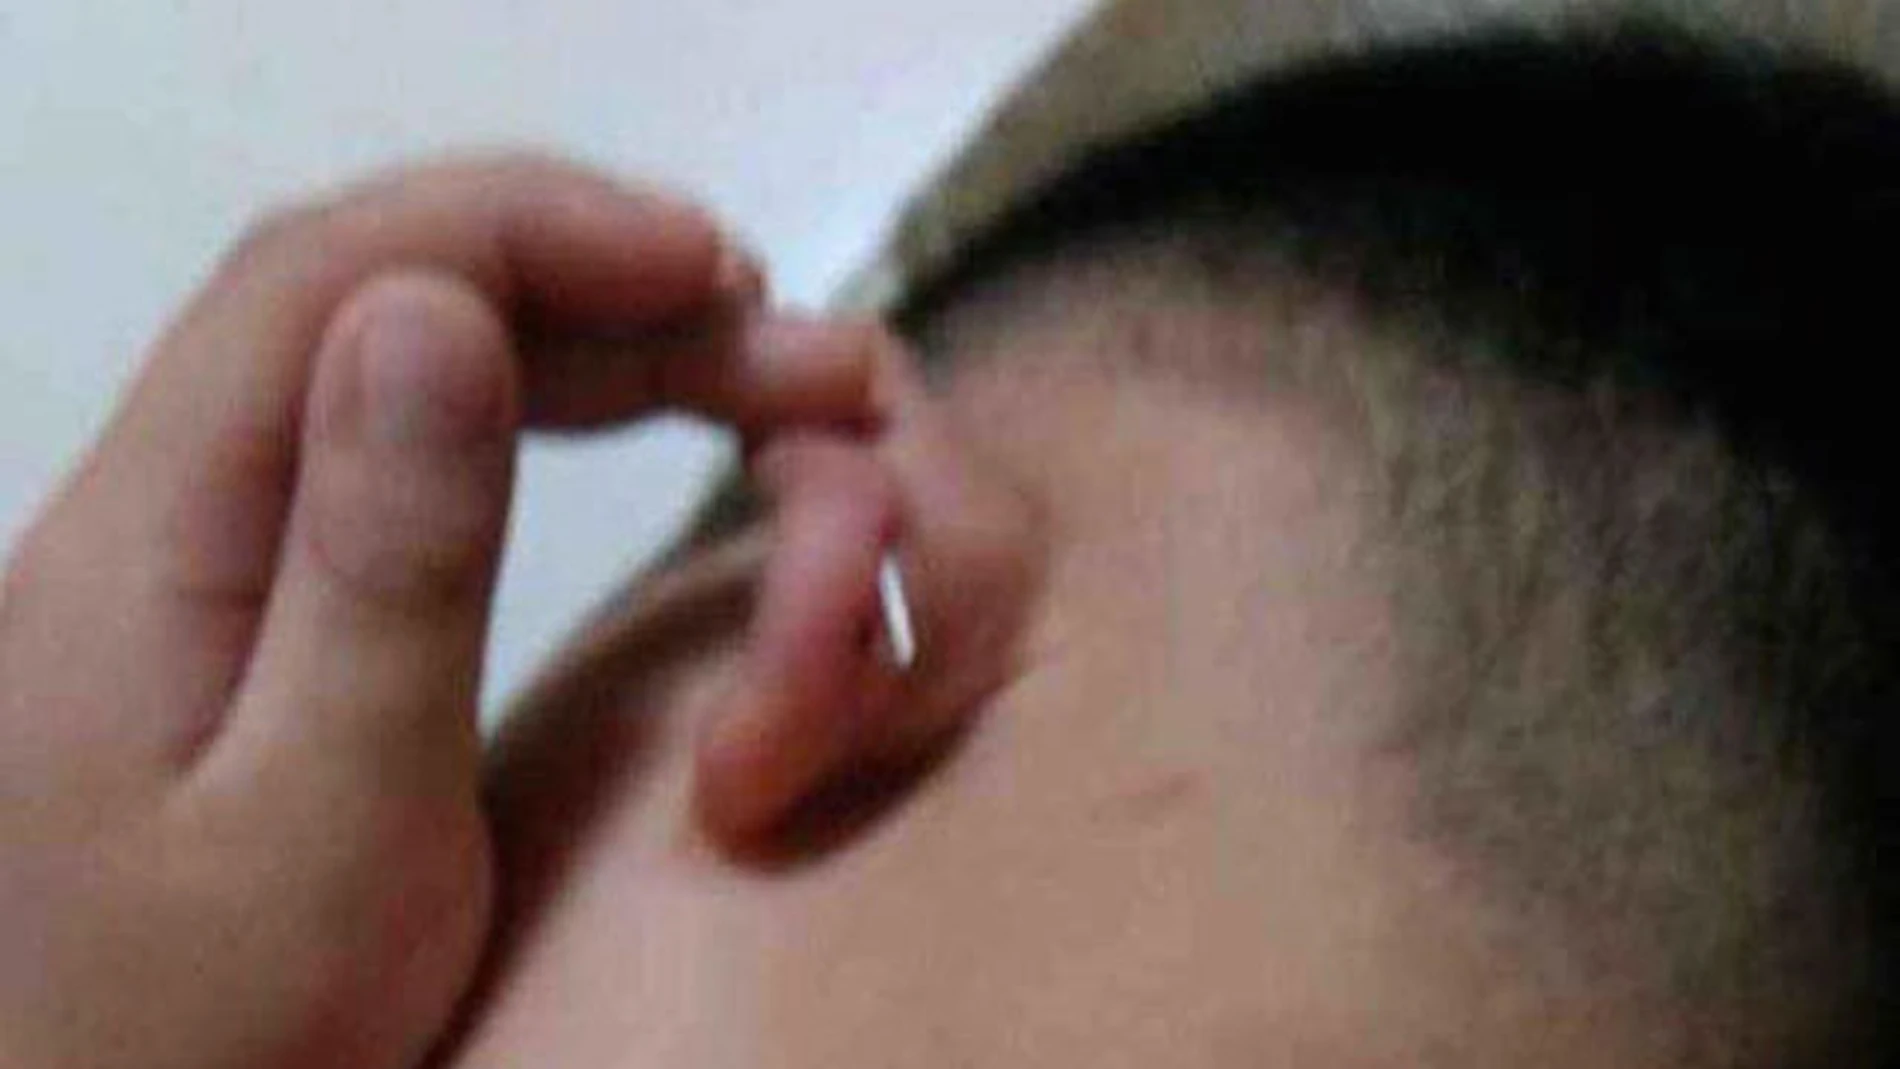 La madre del niño compartió esta imagen de la grapa en la oreja del niño